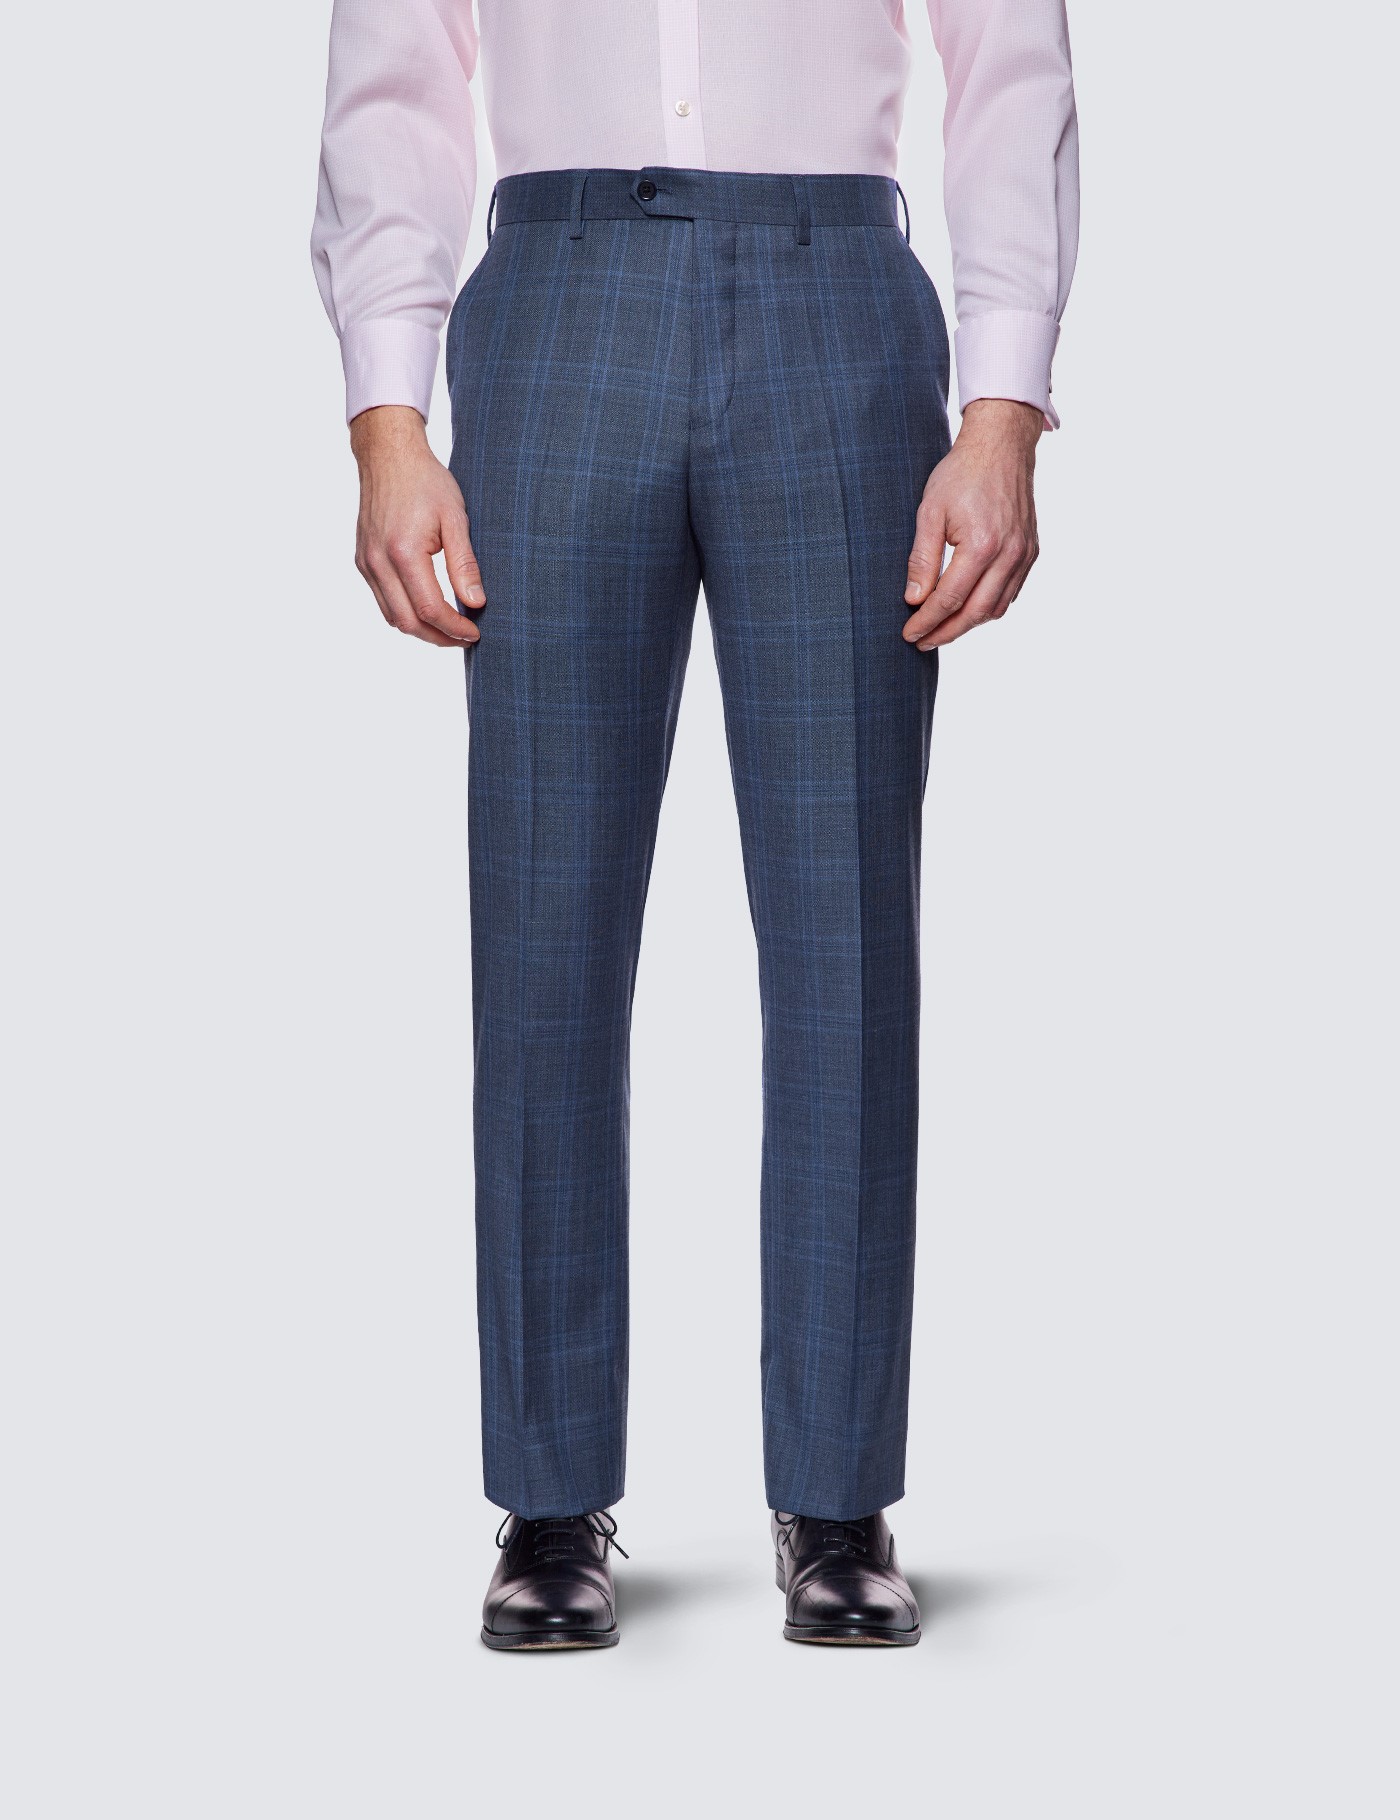 For men - men's clothing :: Men's trousers :: Men's blue-gray checked Arber  pants